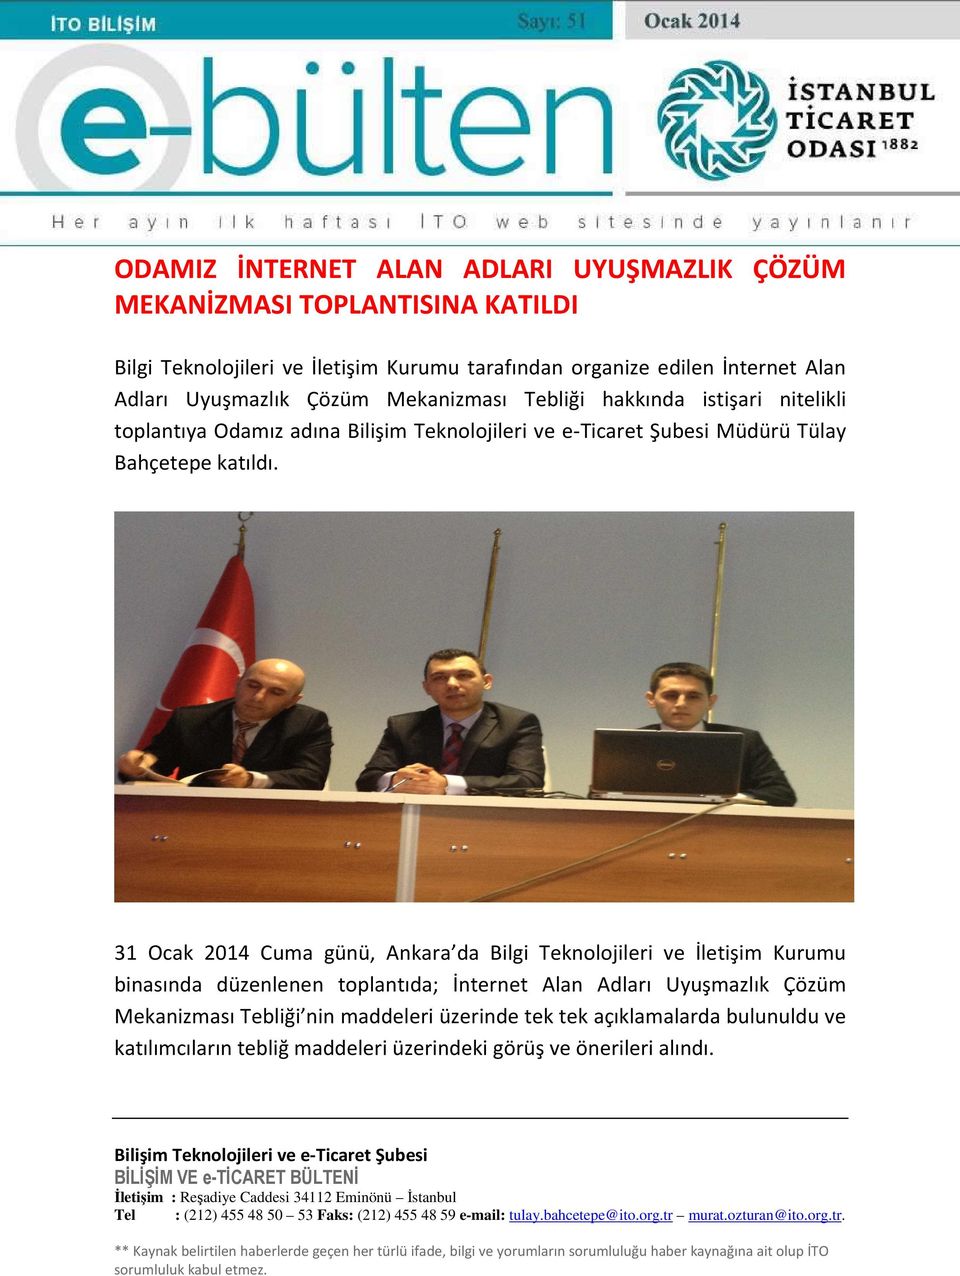 31 Ocak 2014 Cuma günü, Ankara da Bilgi Teknolojileri ve İletişim Kurumu binasında düzenlenen toplantıda; İnternet Alan Adları Uyuşmazlık Çözüm